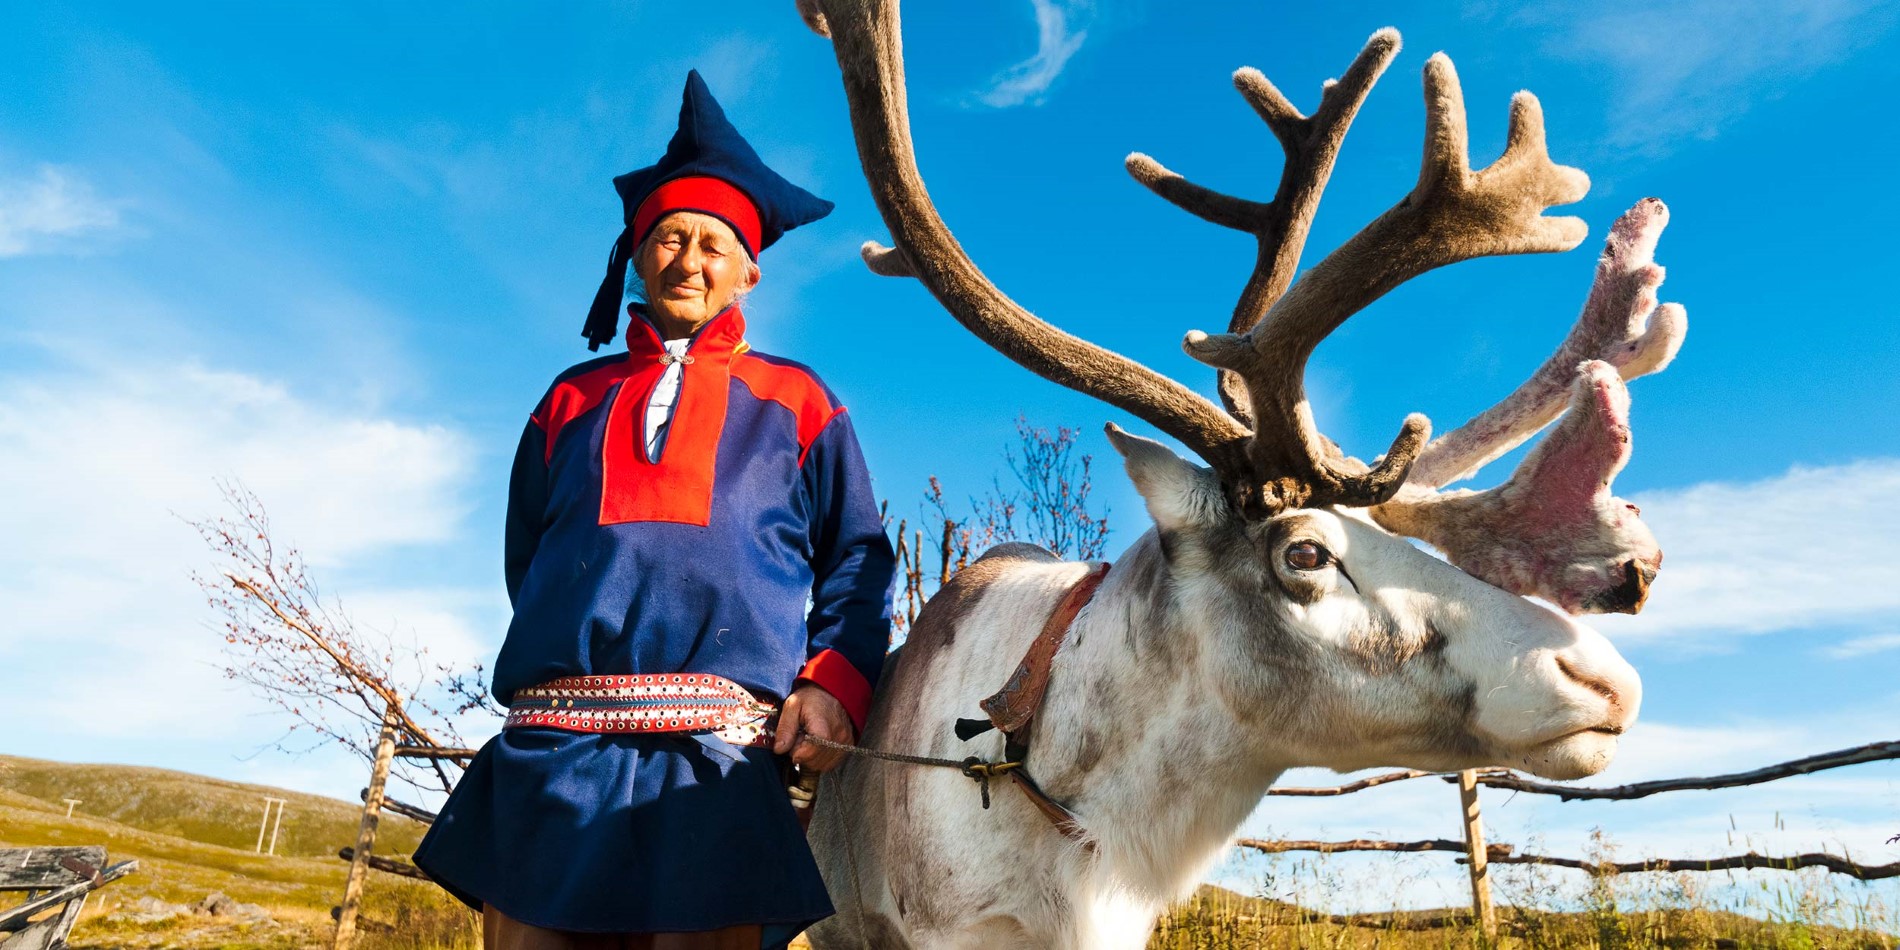 Rensere er afgørende for samisk kultur og liv